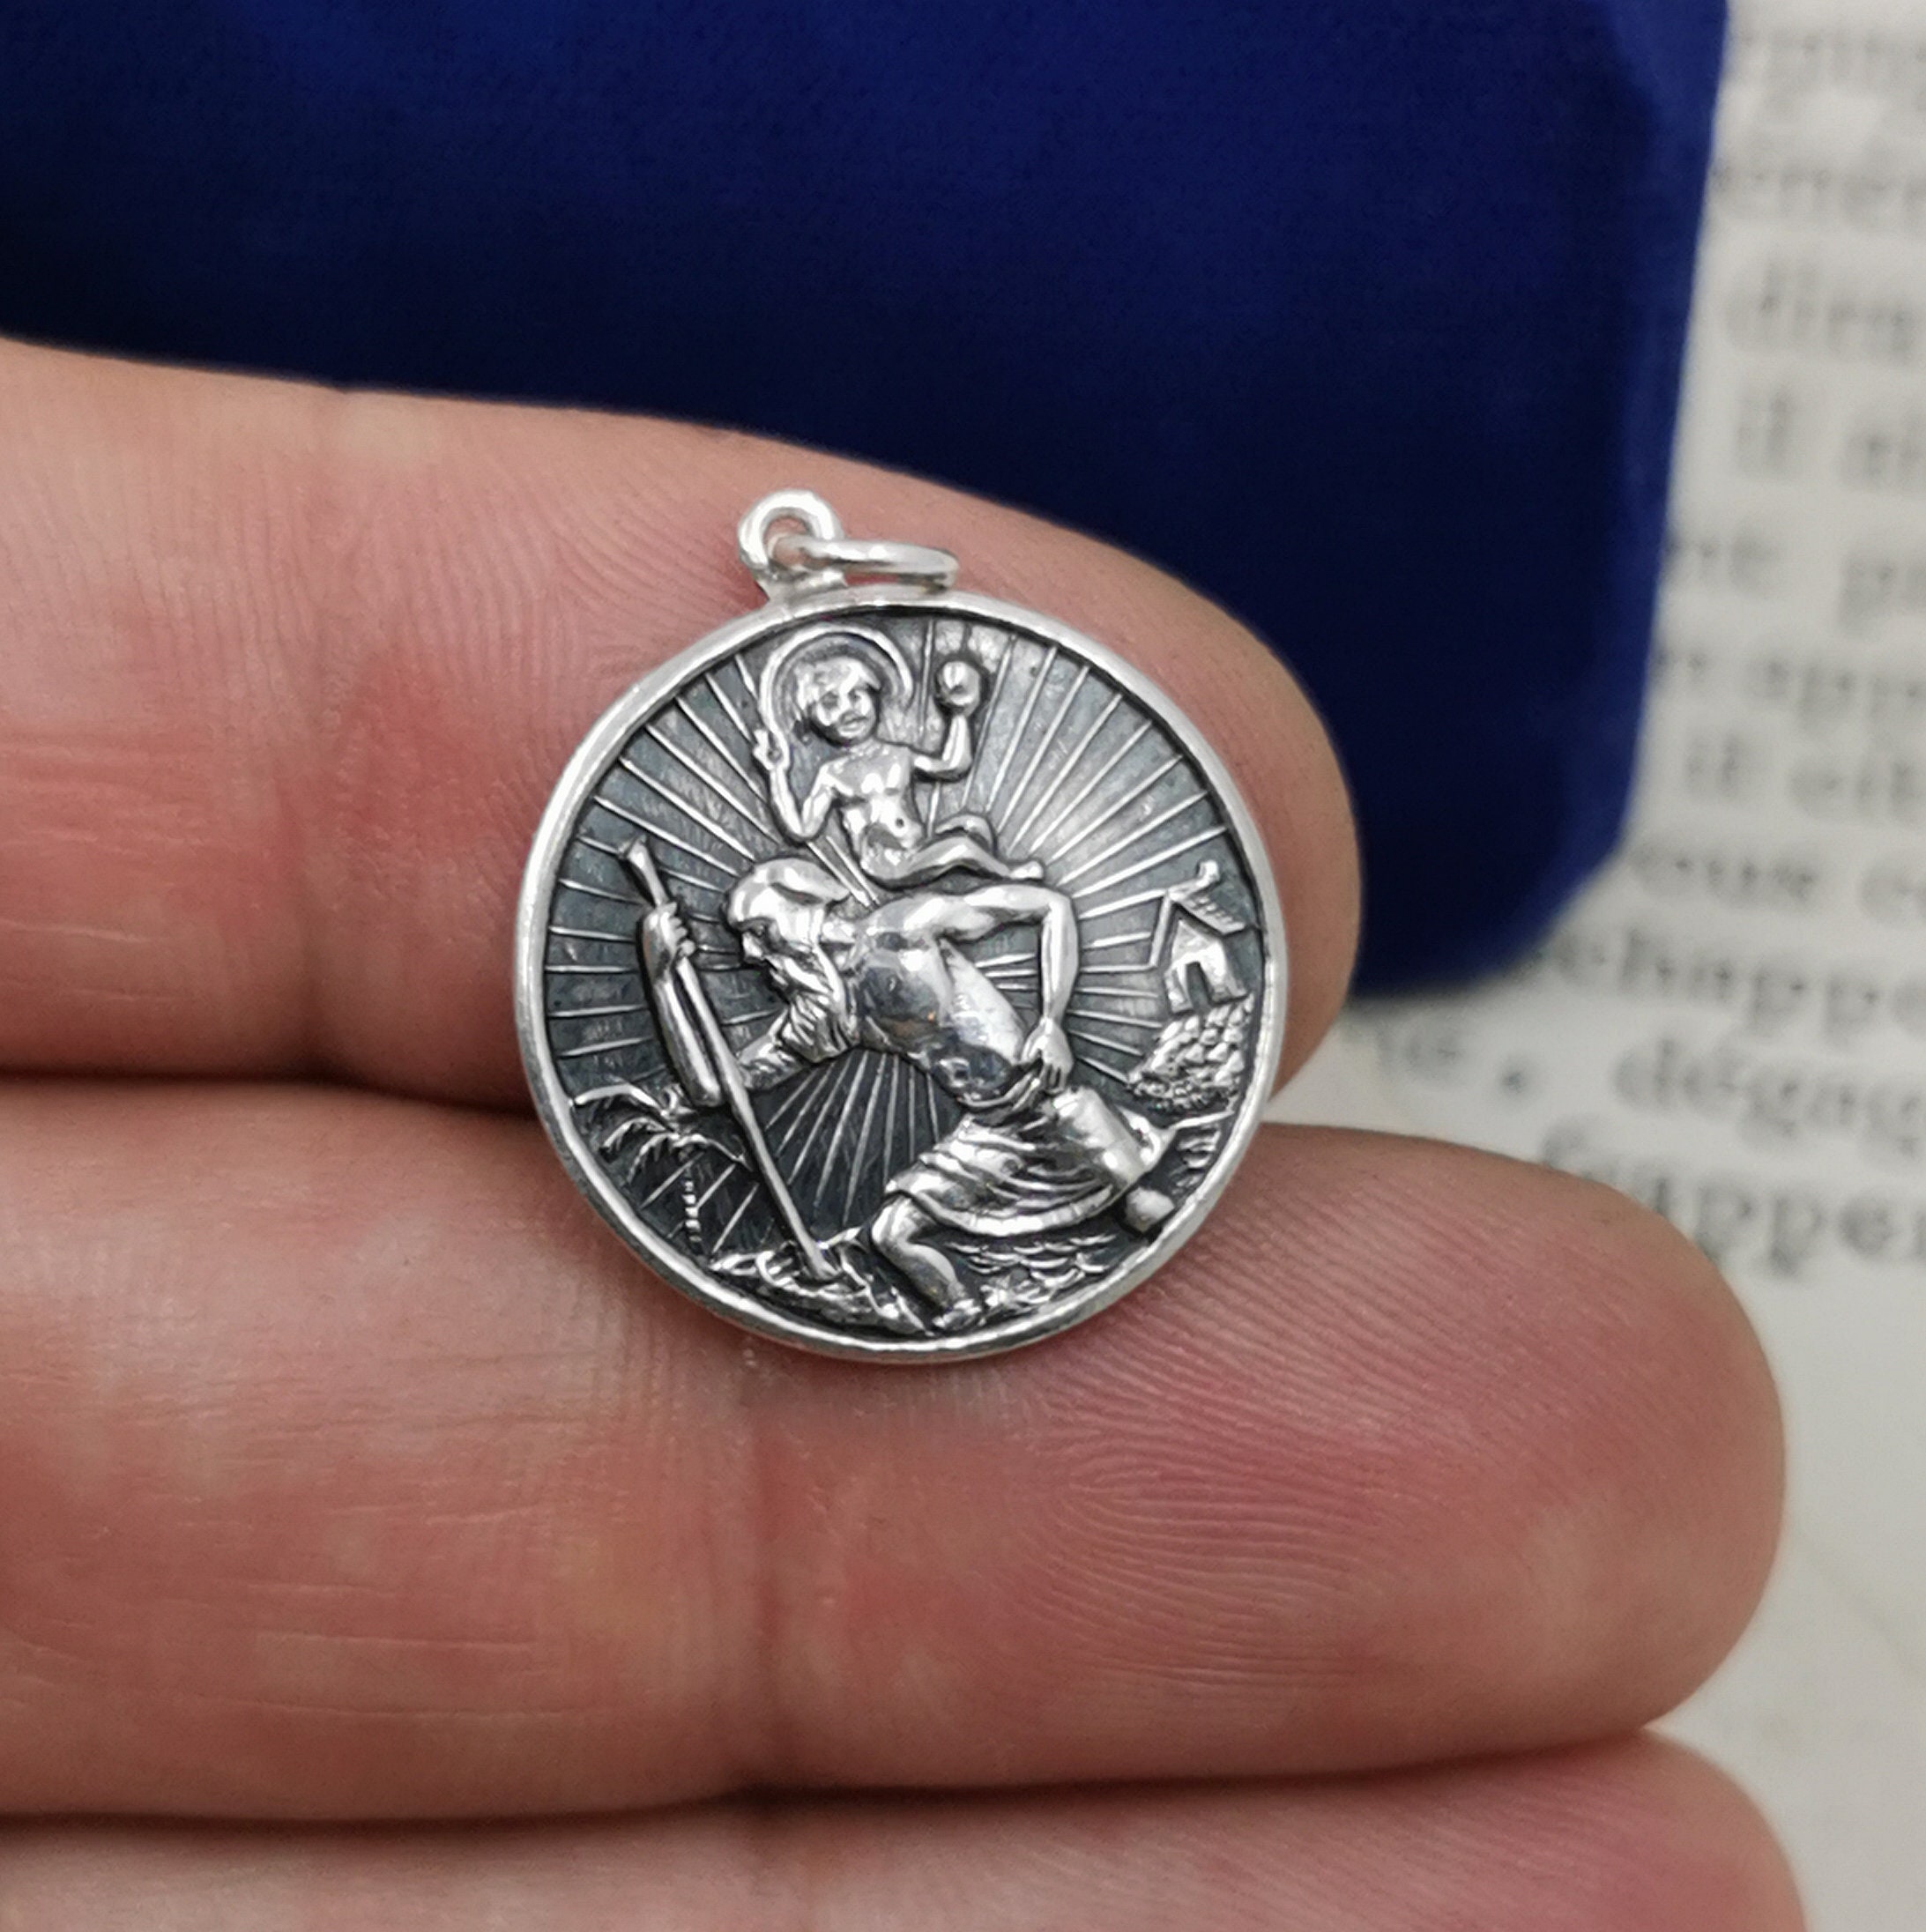 Médaille Parchemin de Saint Christophe en Argent Massif - 25 mm